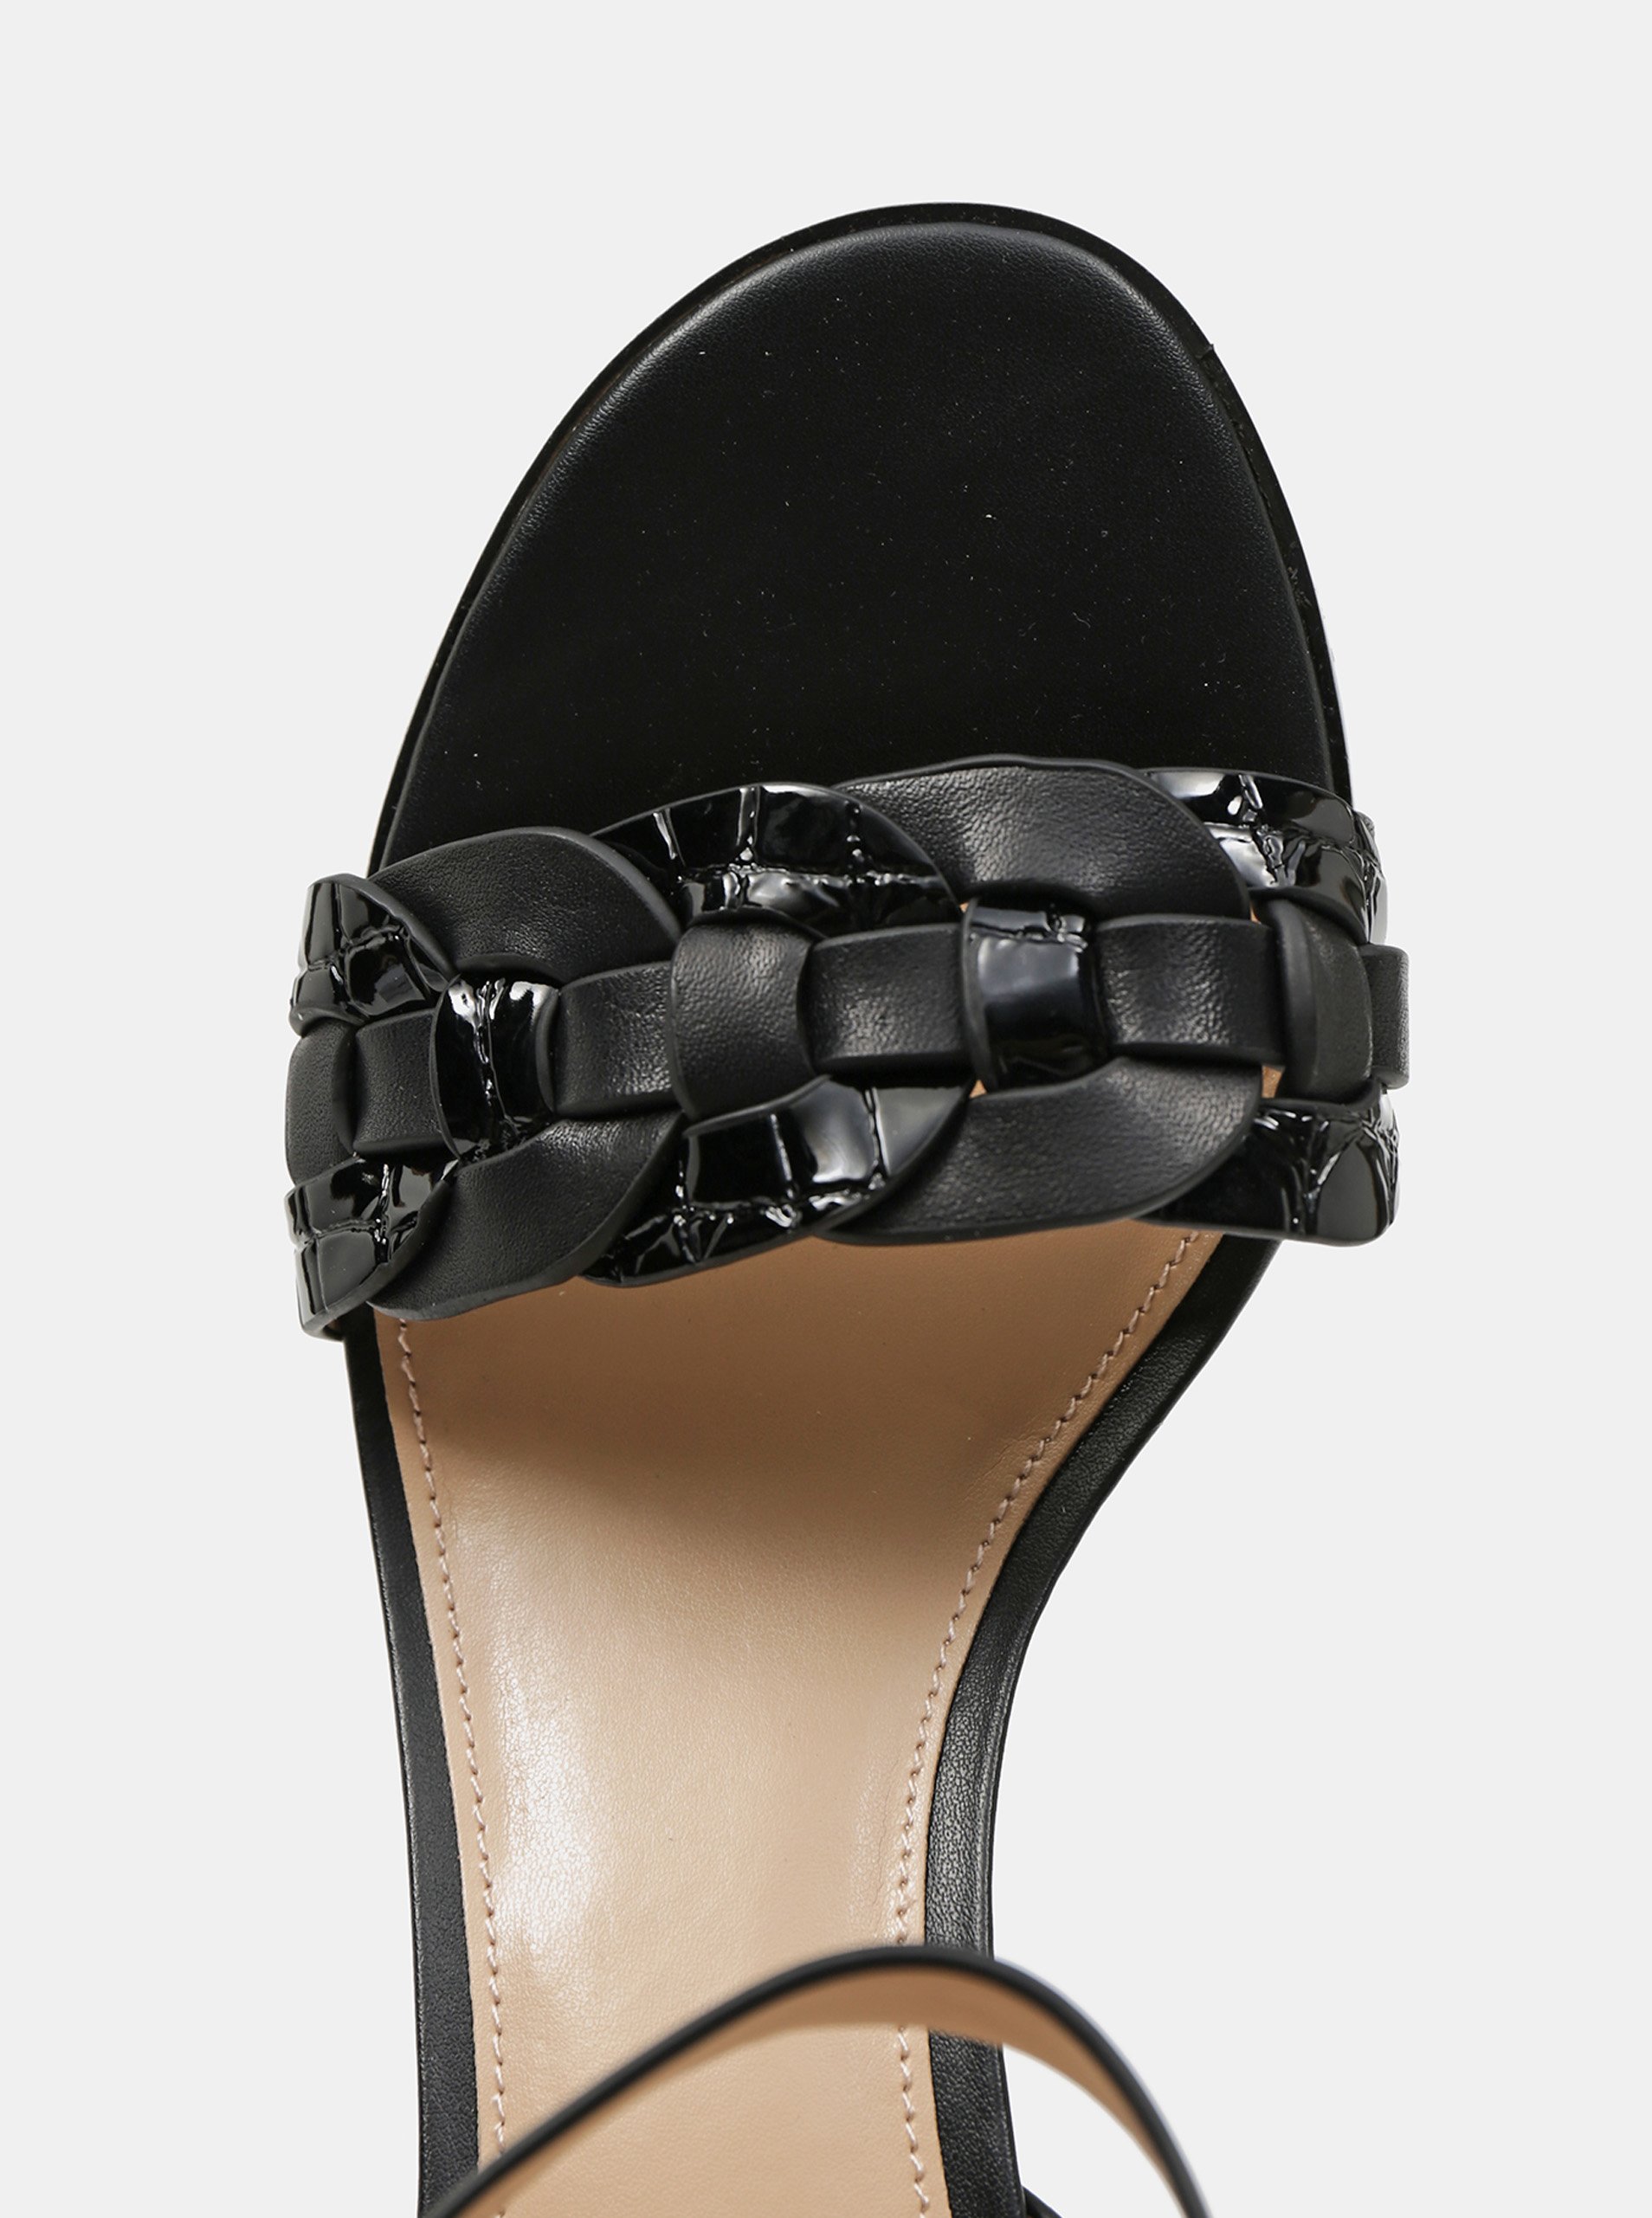 Sandále pre ženy ALDO - čierna.